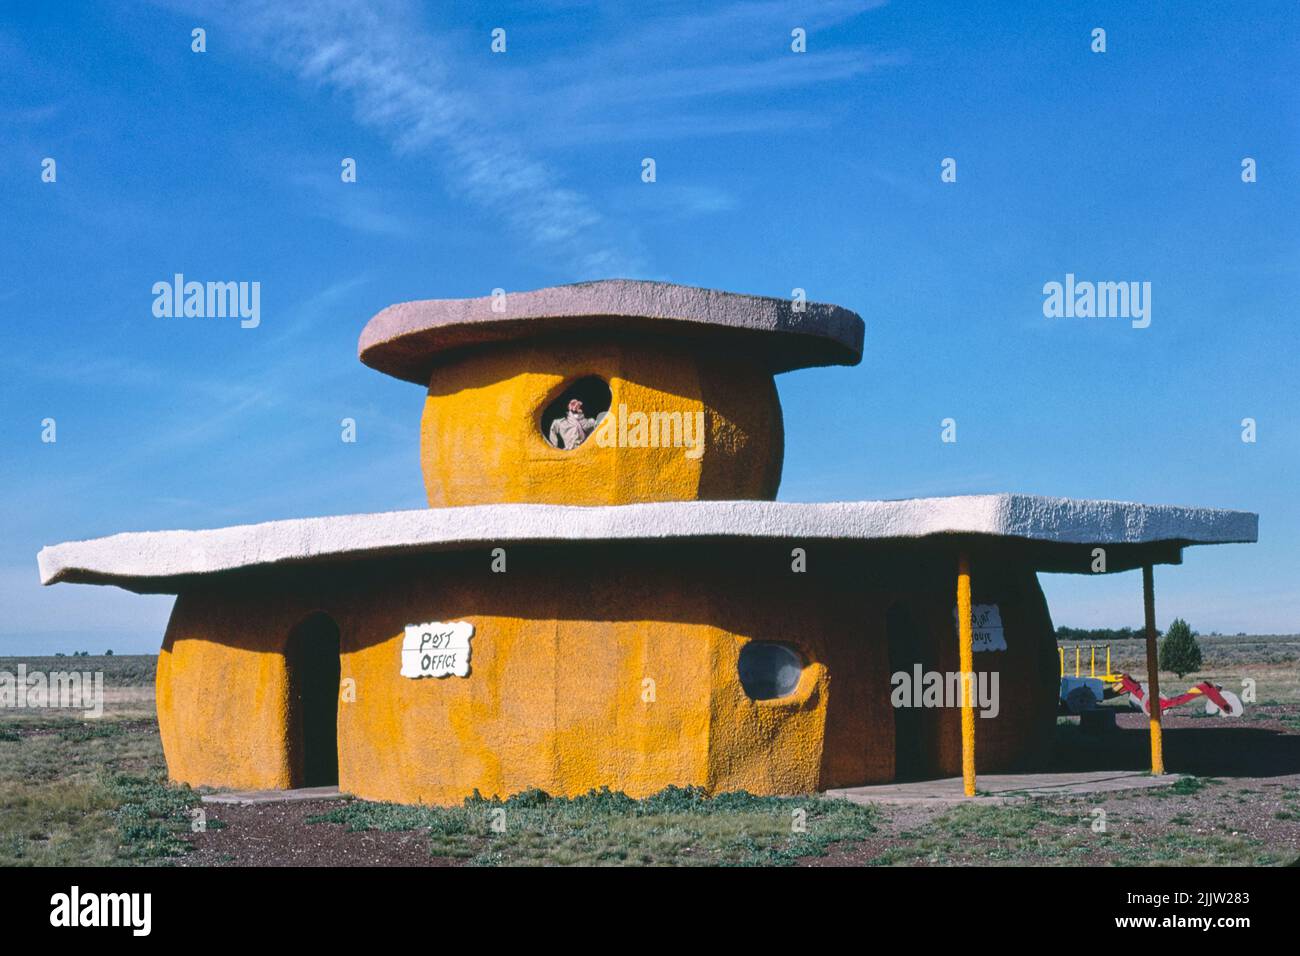 Bureau de poste, Bedrock City, RTS. 64 et 180, Valle, Arizona (1987) photographie en haute résolution par John Margolies. Original de la bibliothèque de Congr Banque D'Images